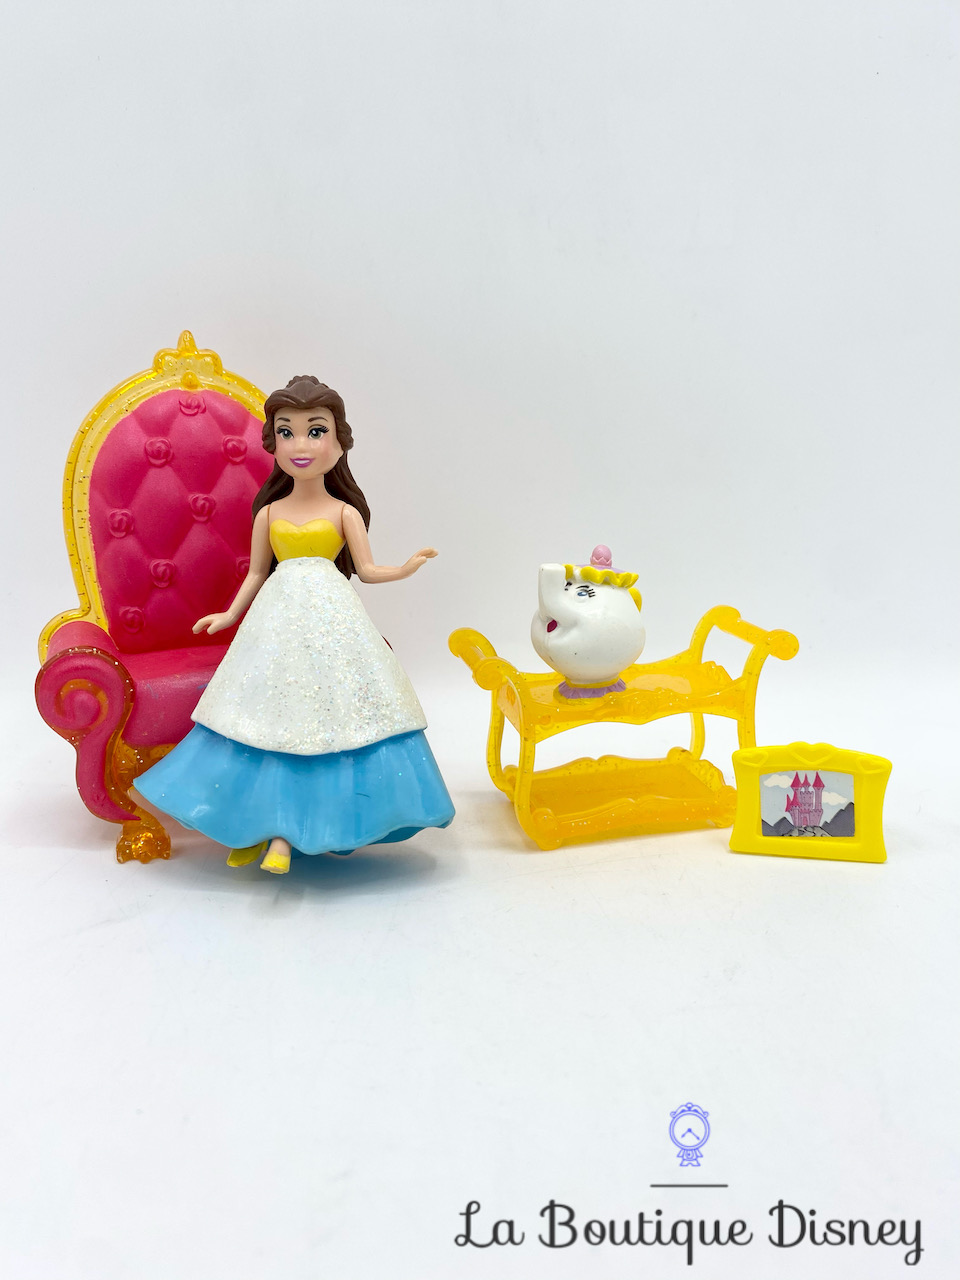 Figurine Fashion Polly Pocket Belle La belle et la bête Fairy Tale Scene Disney Princess Mattel 2011 Mini Poupée